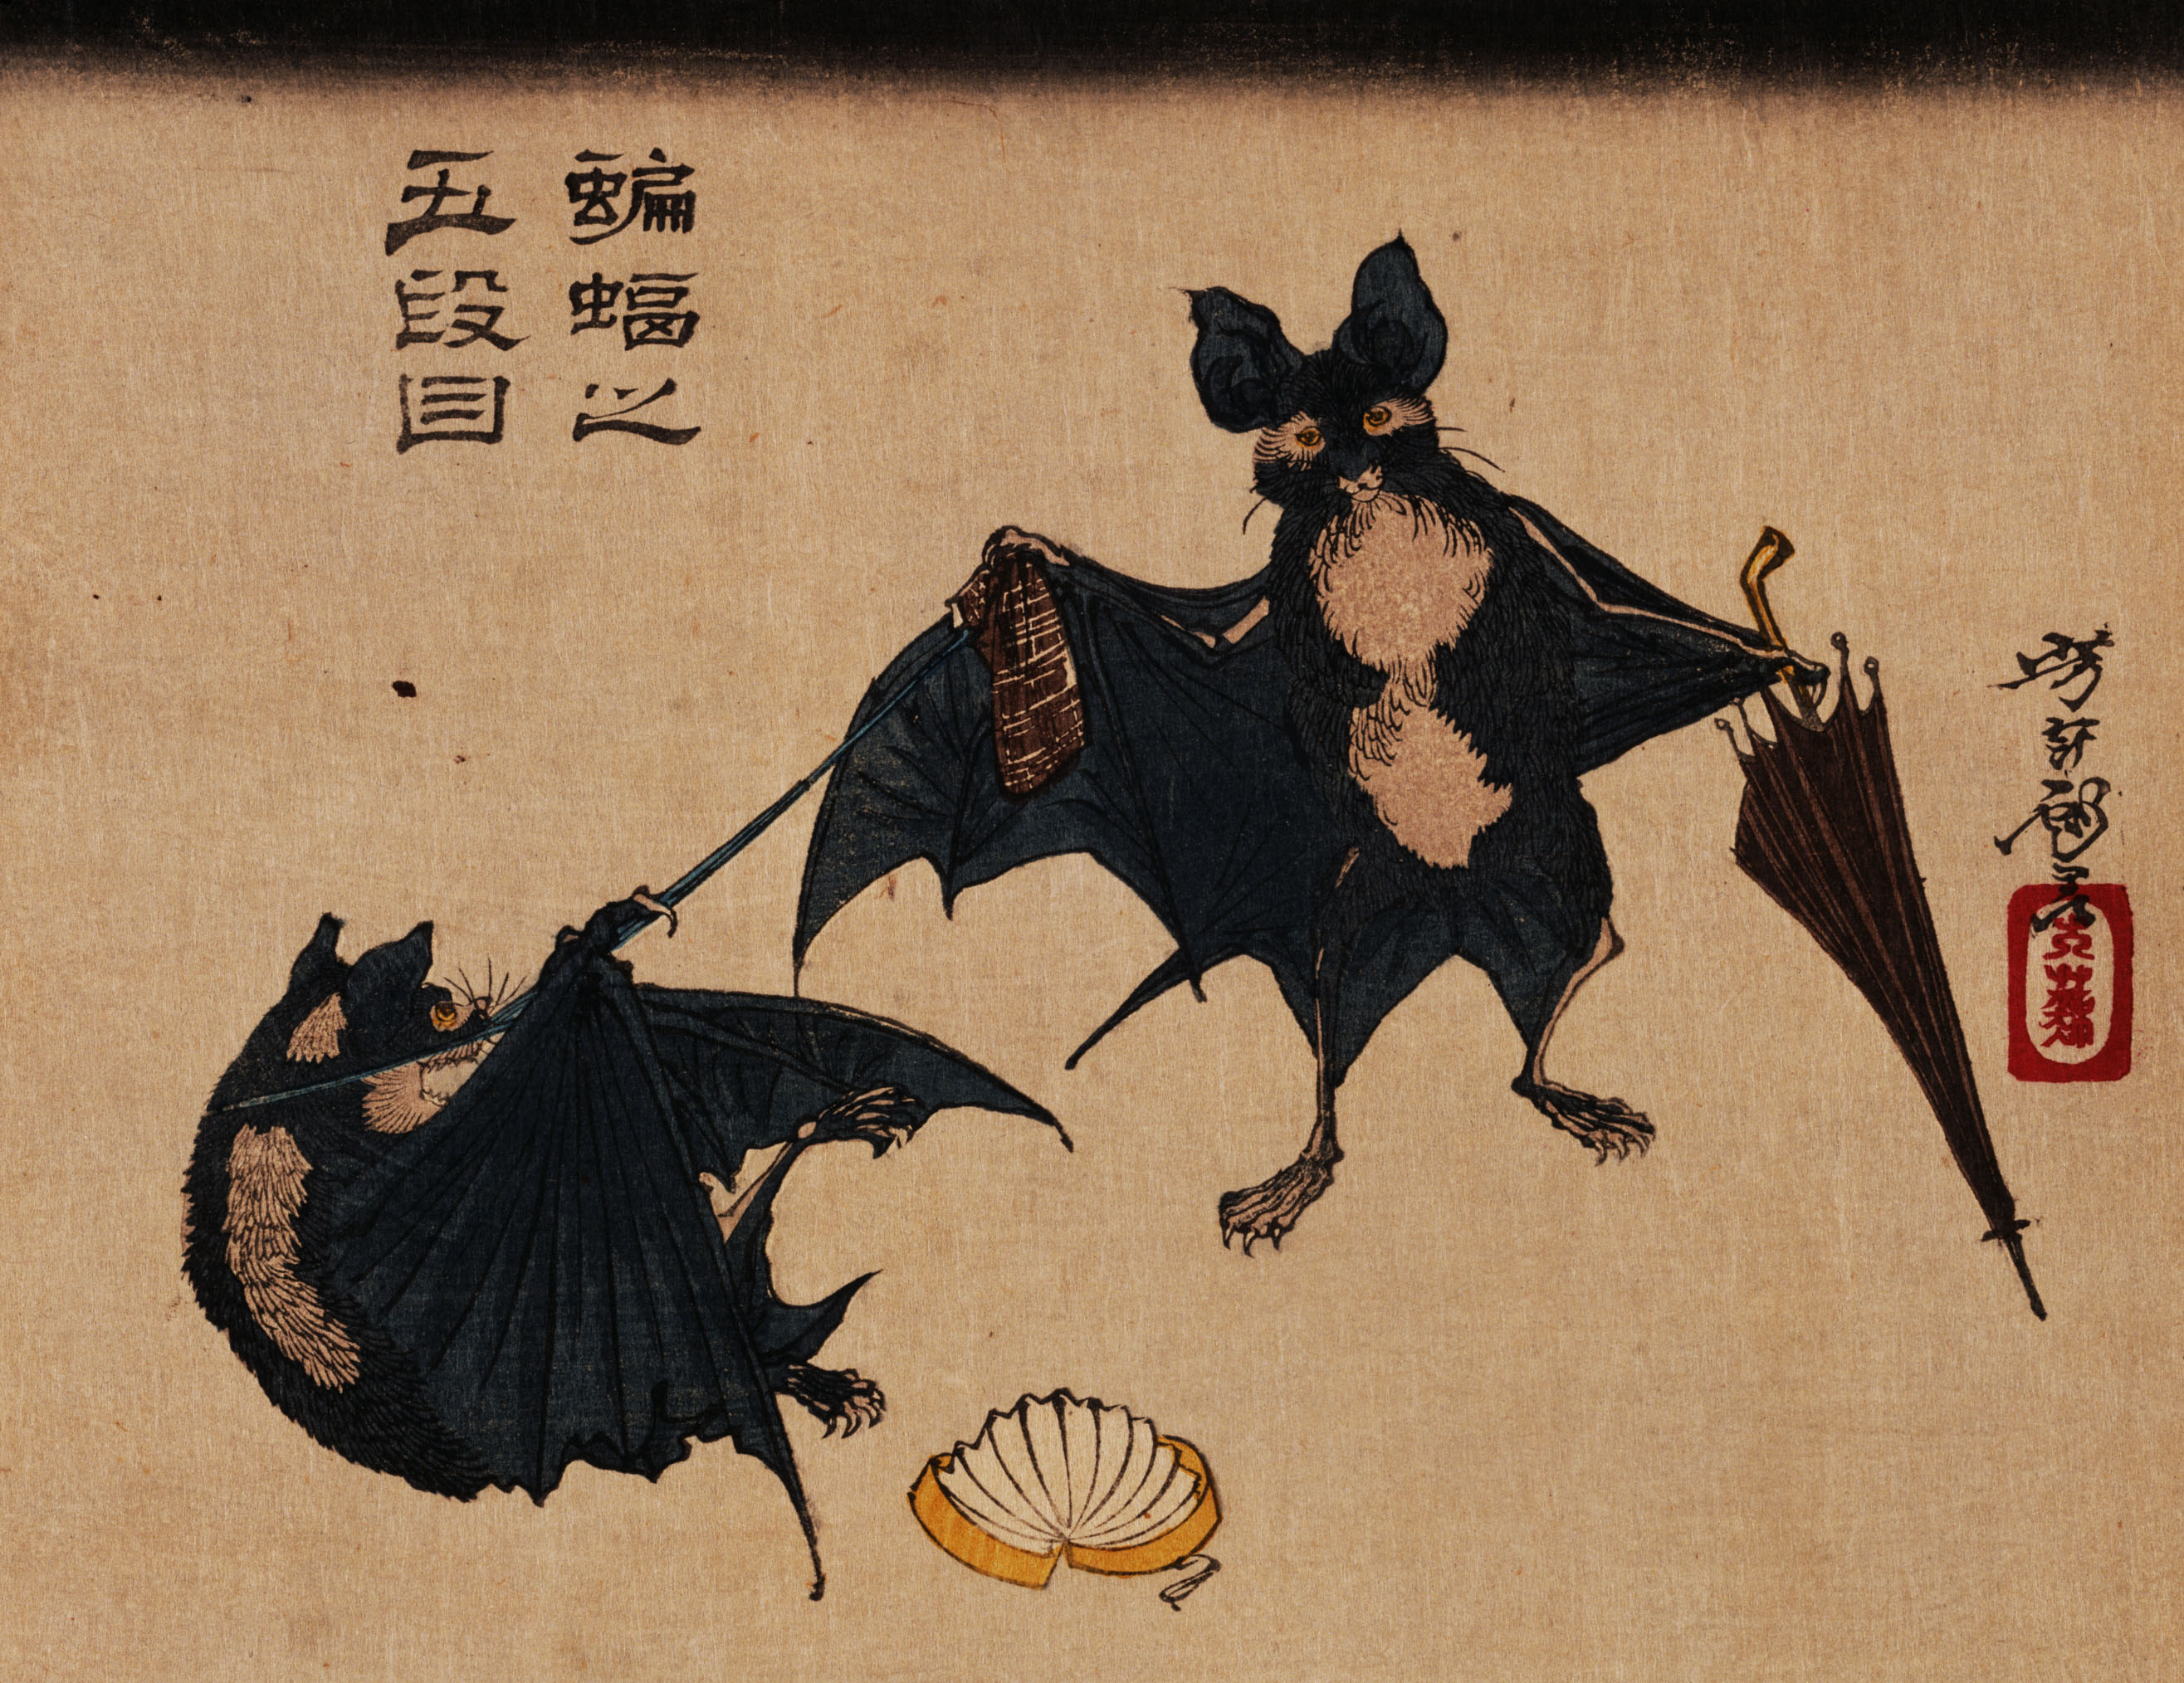 japanese, bat, artistic